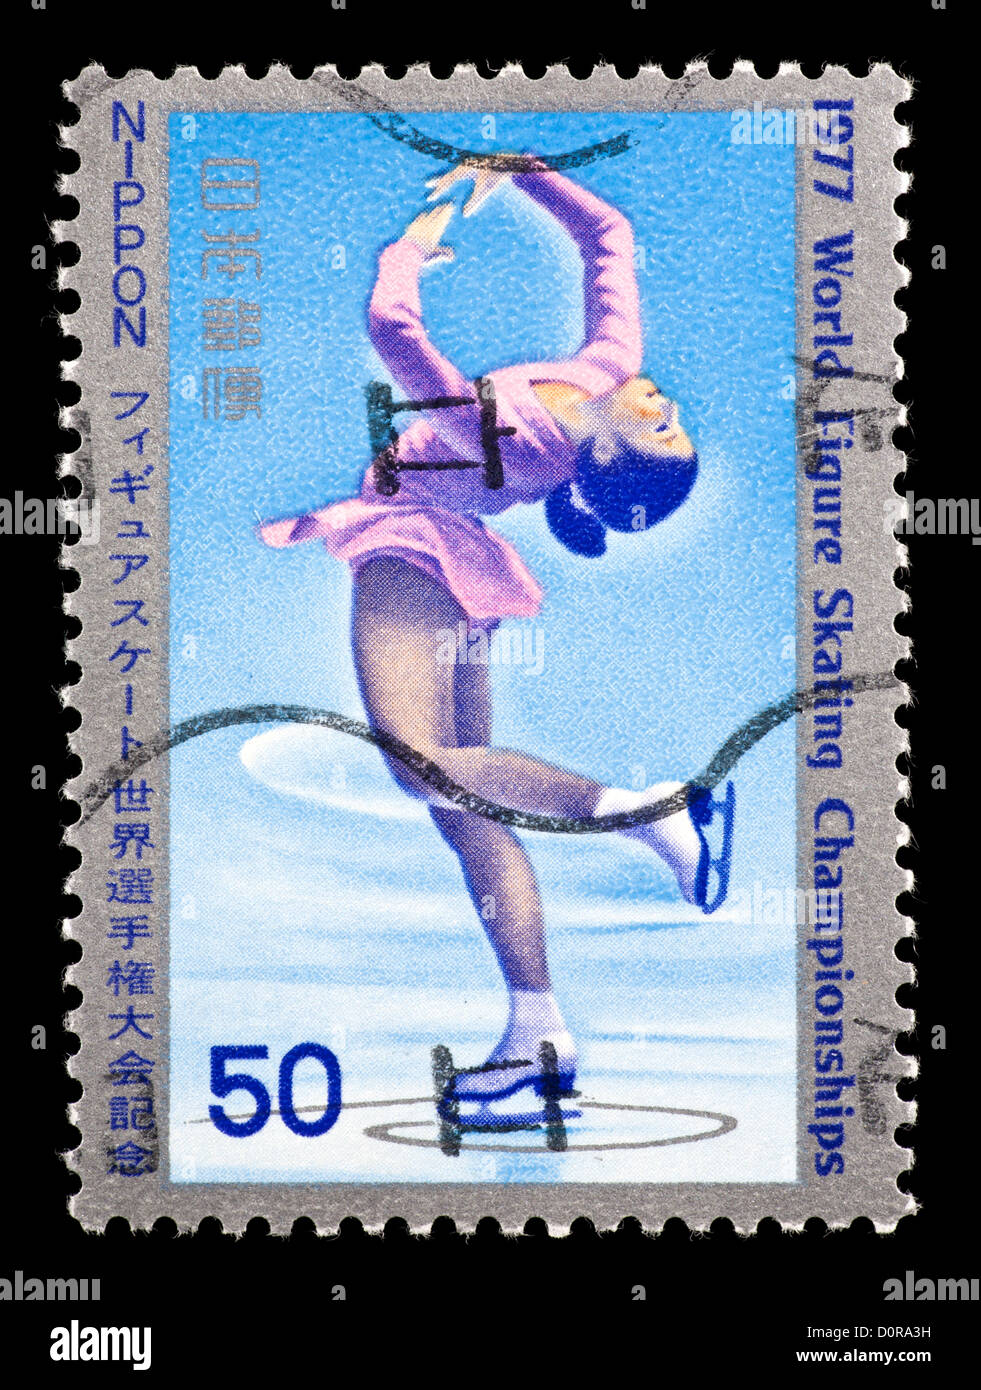 Briefmarke aus Japan zeigt eine Abbildung Skater, für die 1977 World Figure Skating Championships in Tokio, Japan. Stockfoto